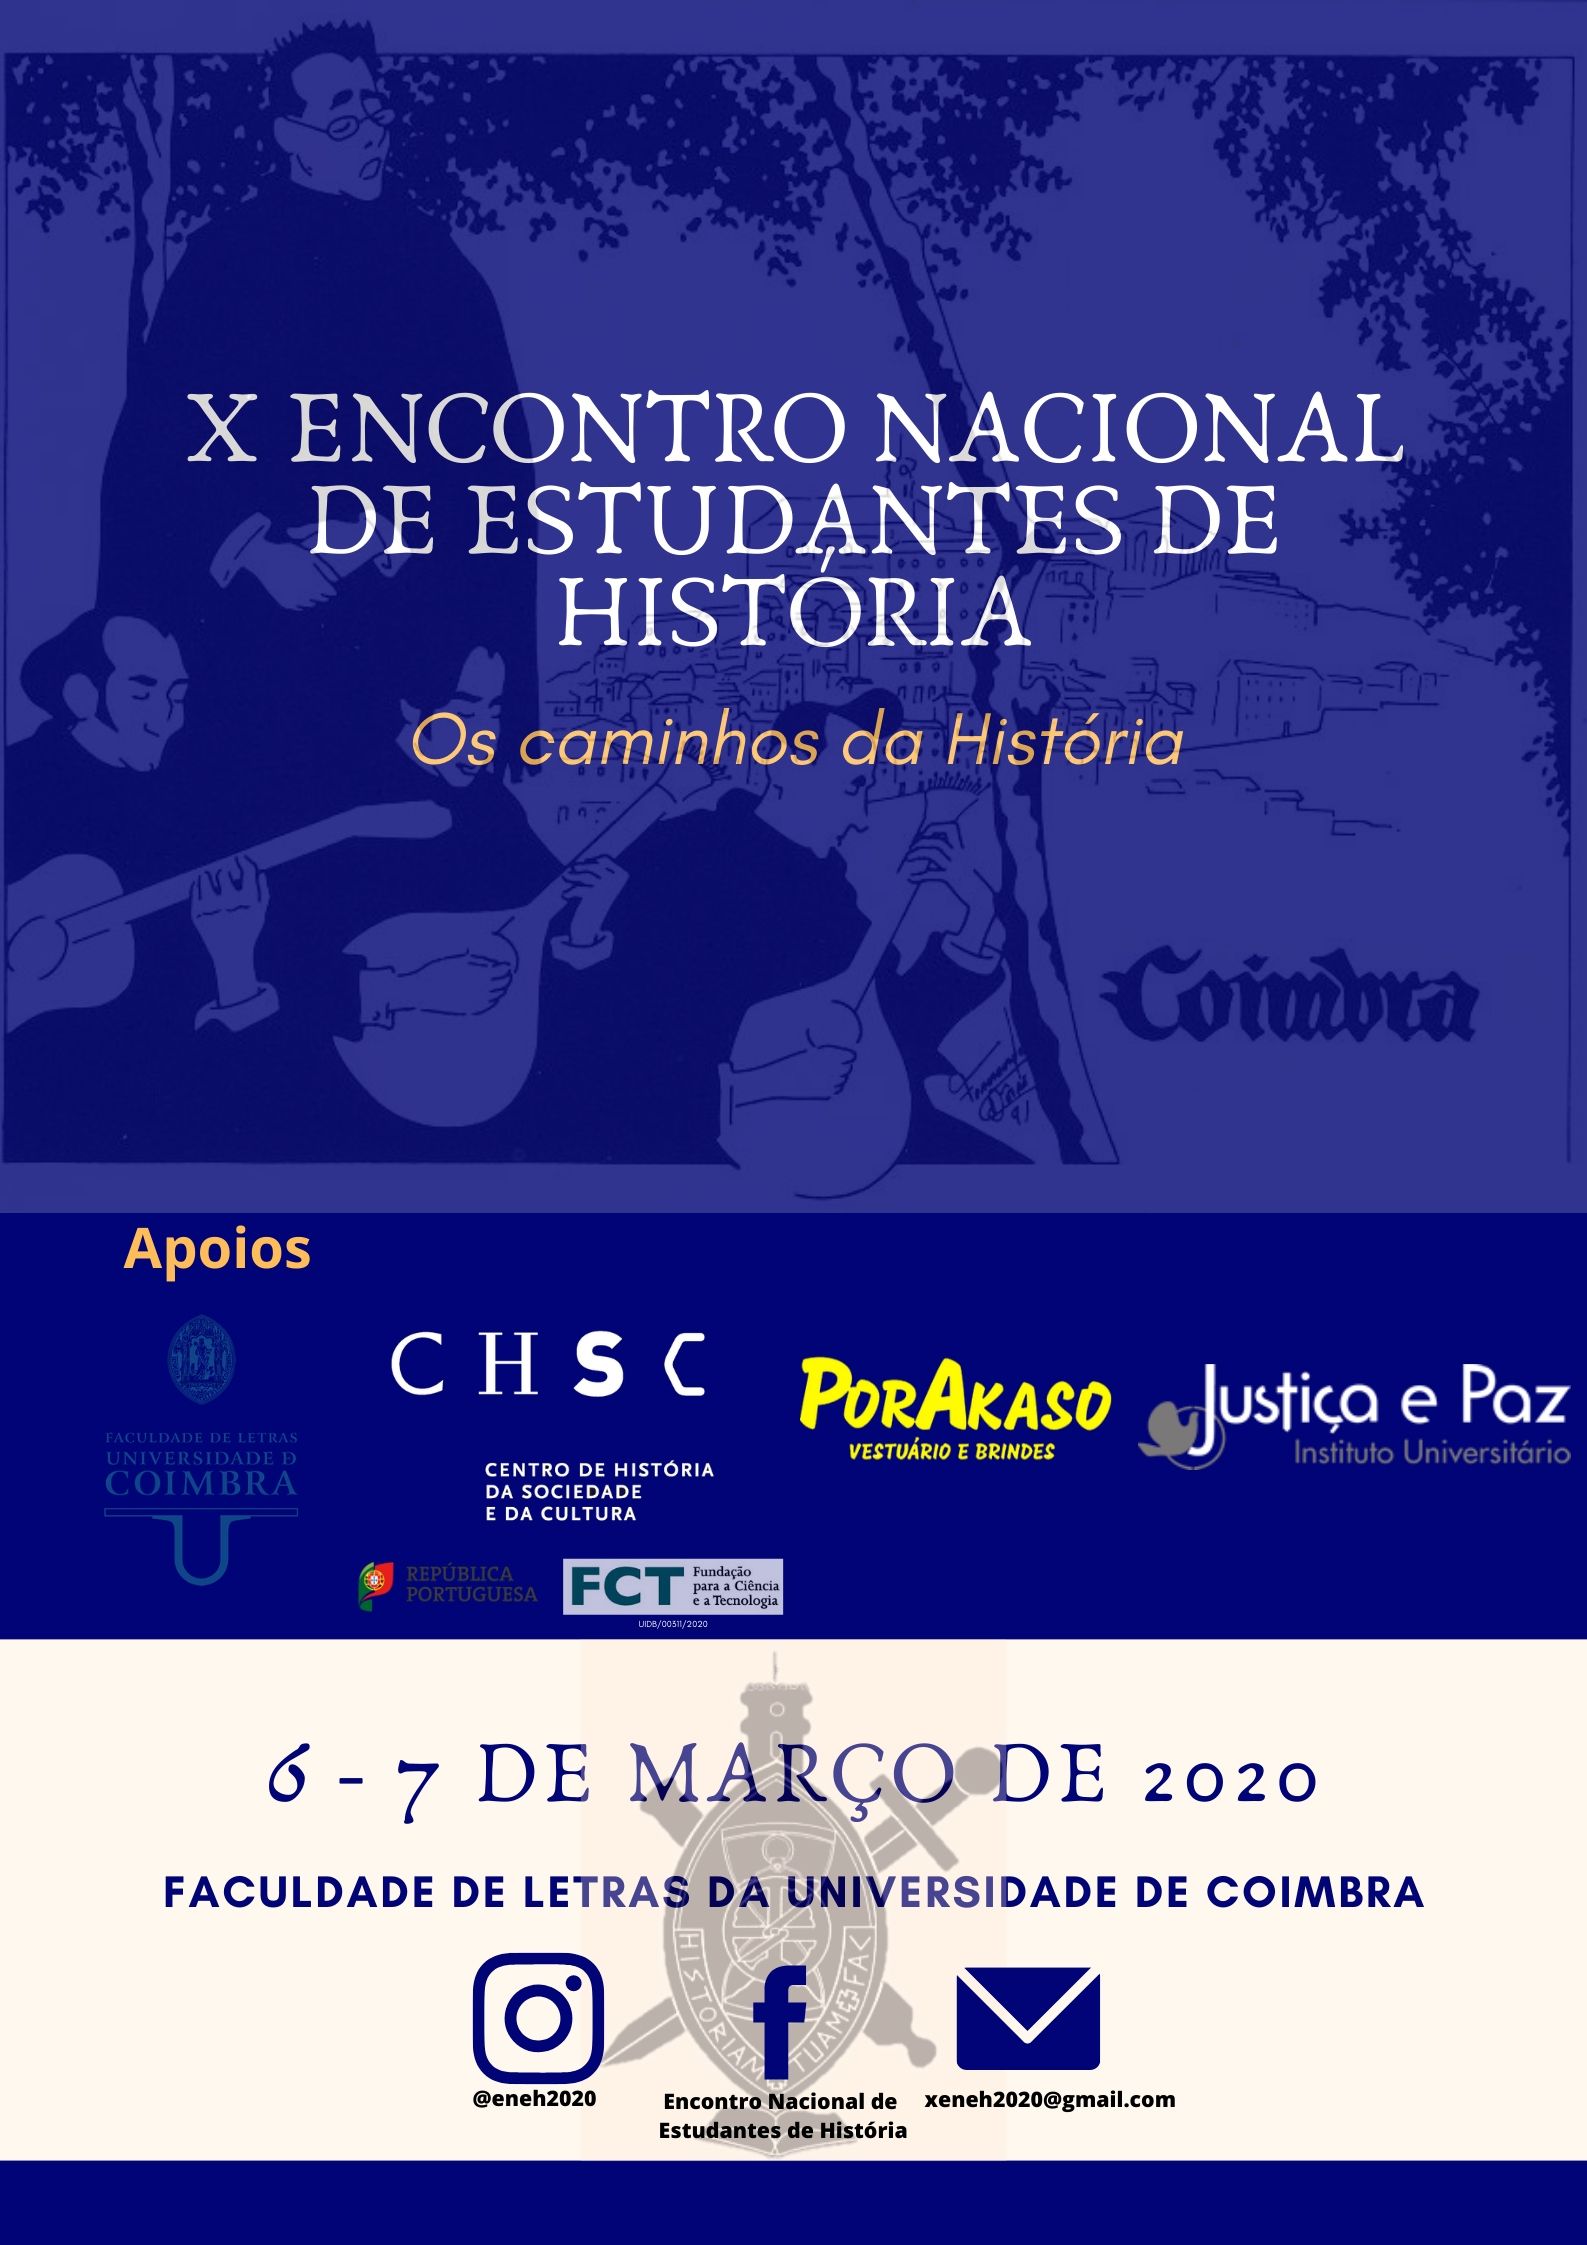 X ENCONTRO NACIONAL DE ESTUDANTES DE HISTÓRIA